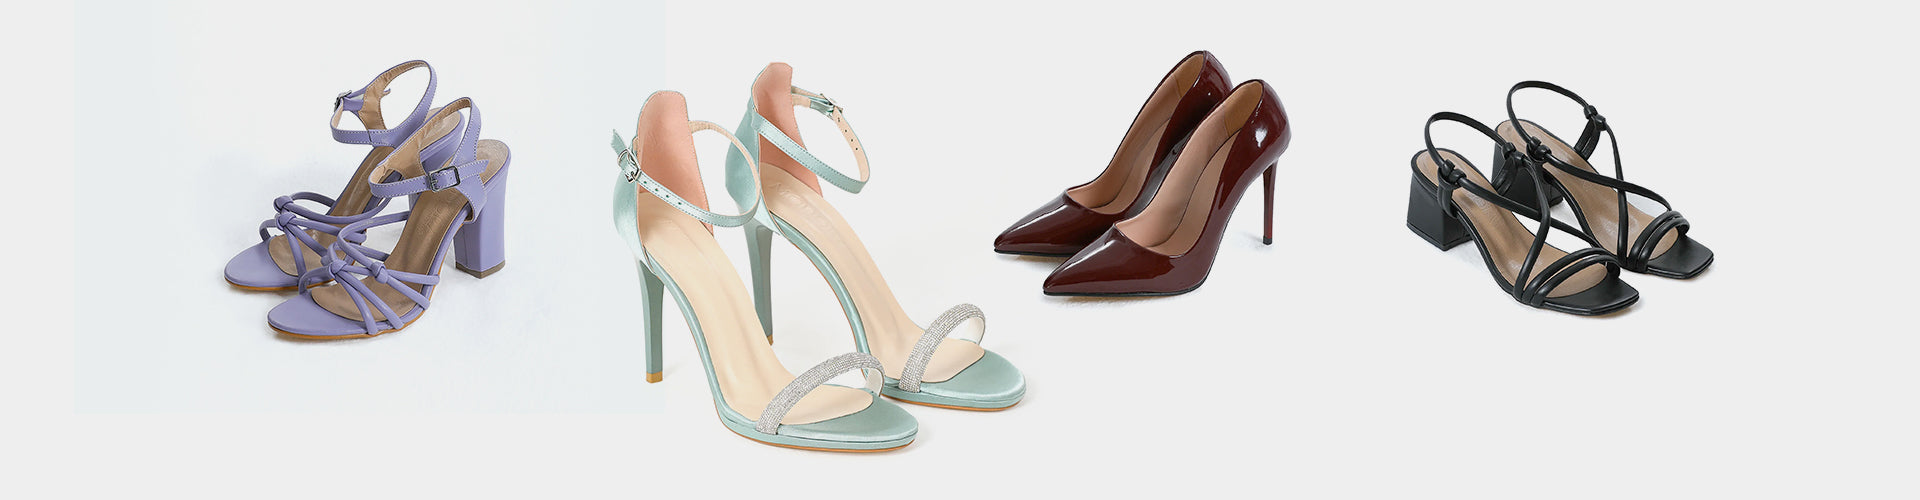 Christian Louboutin Women's Shoes | Neiman Marcus